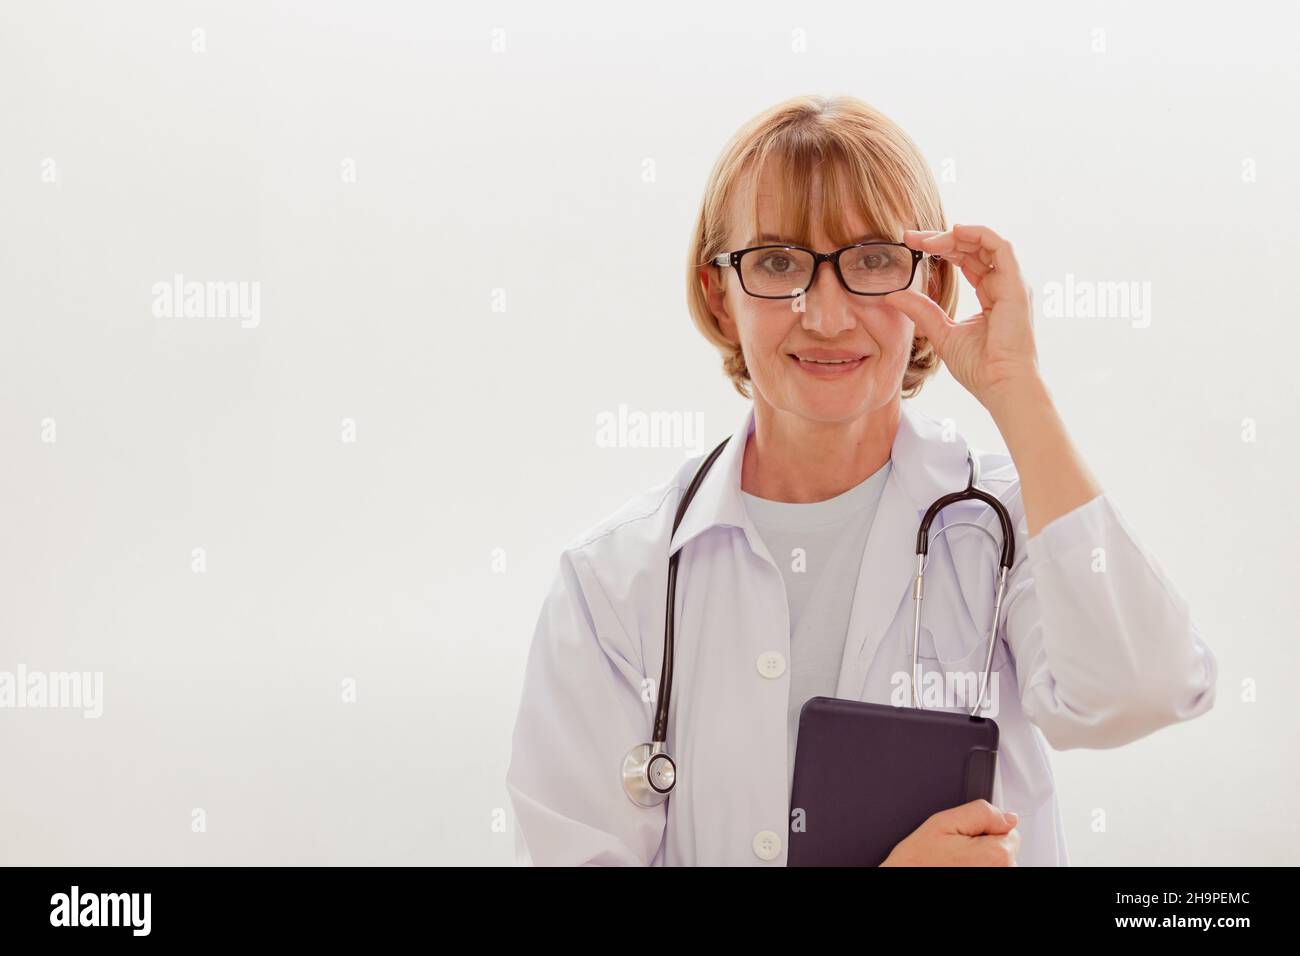 Portrait professionelle Frauen guter Arzt Spezialist im Gesundheitswesen Standing Lächeln mit Platz für Text Stockfoto